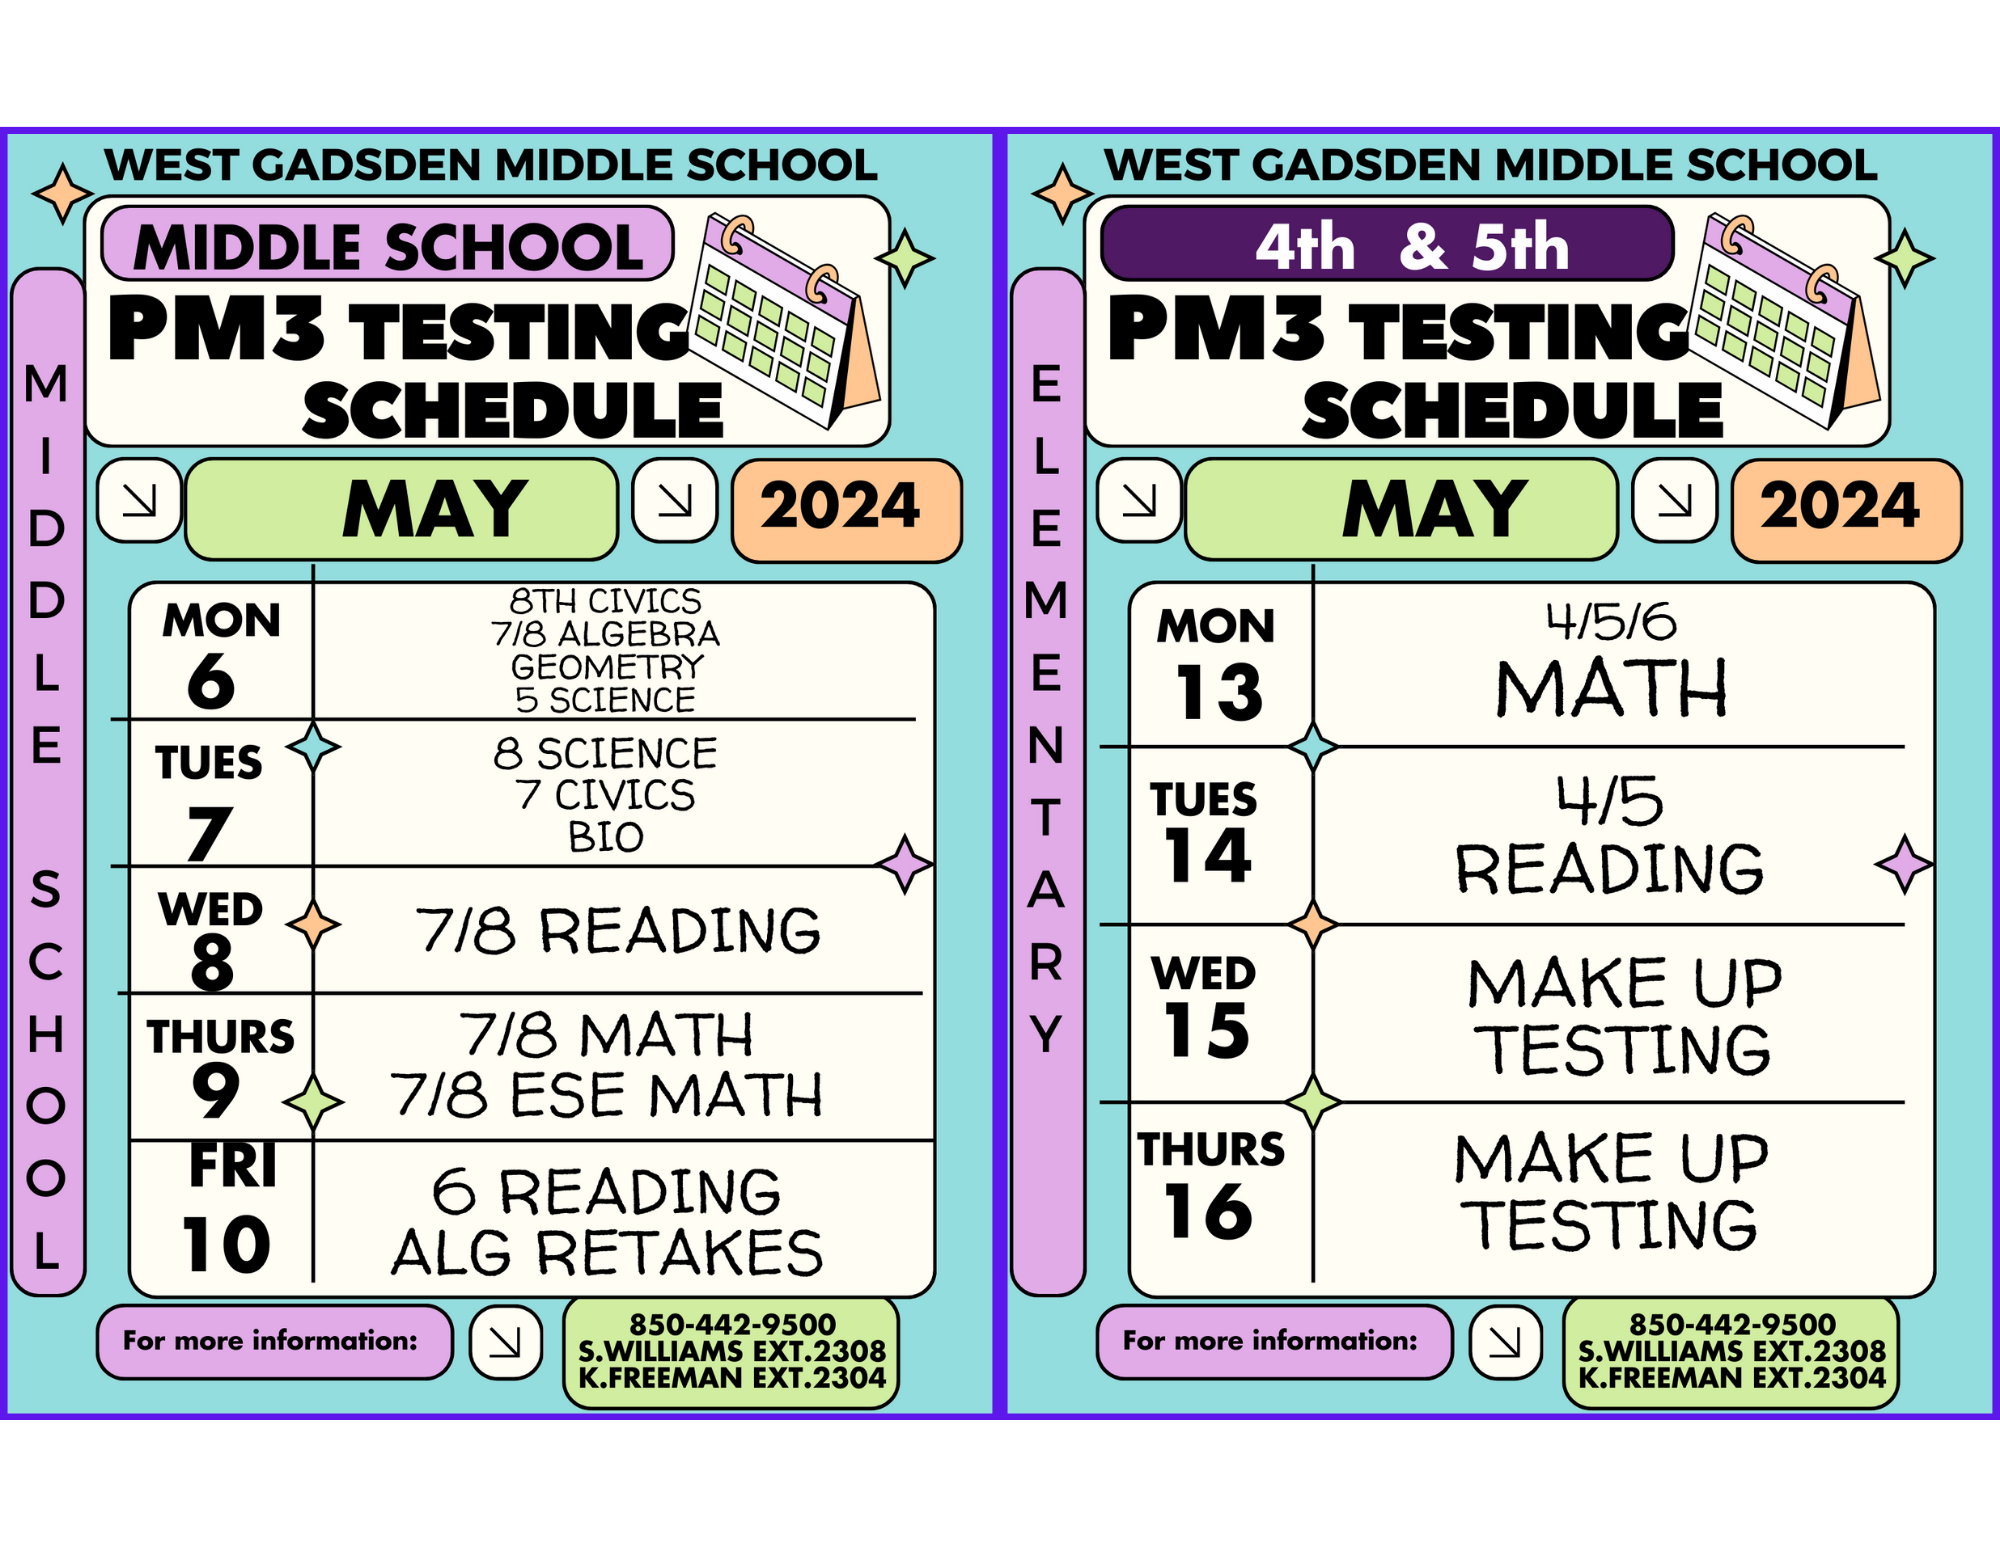 PM 3 Testing schedule